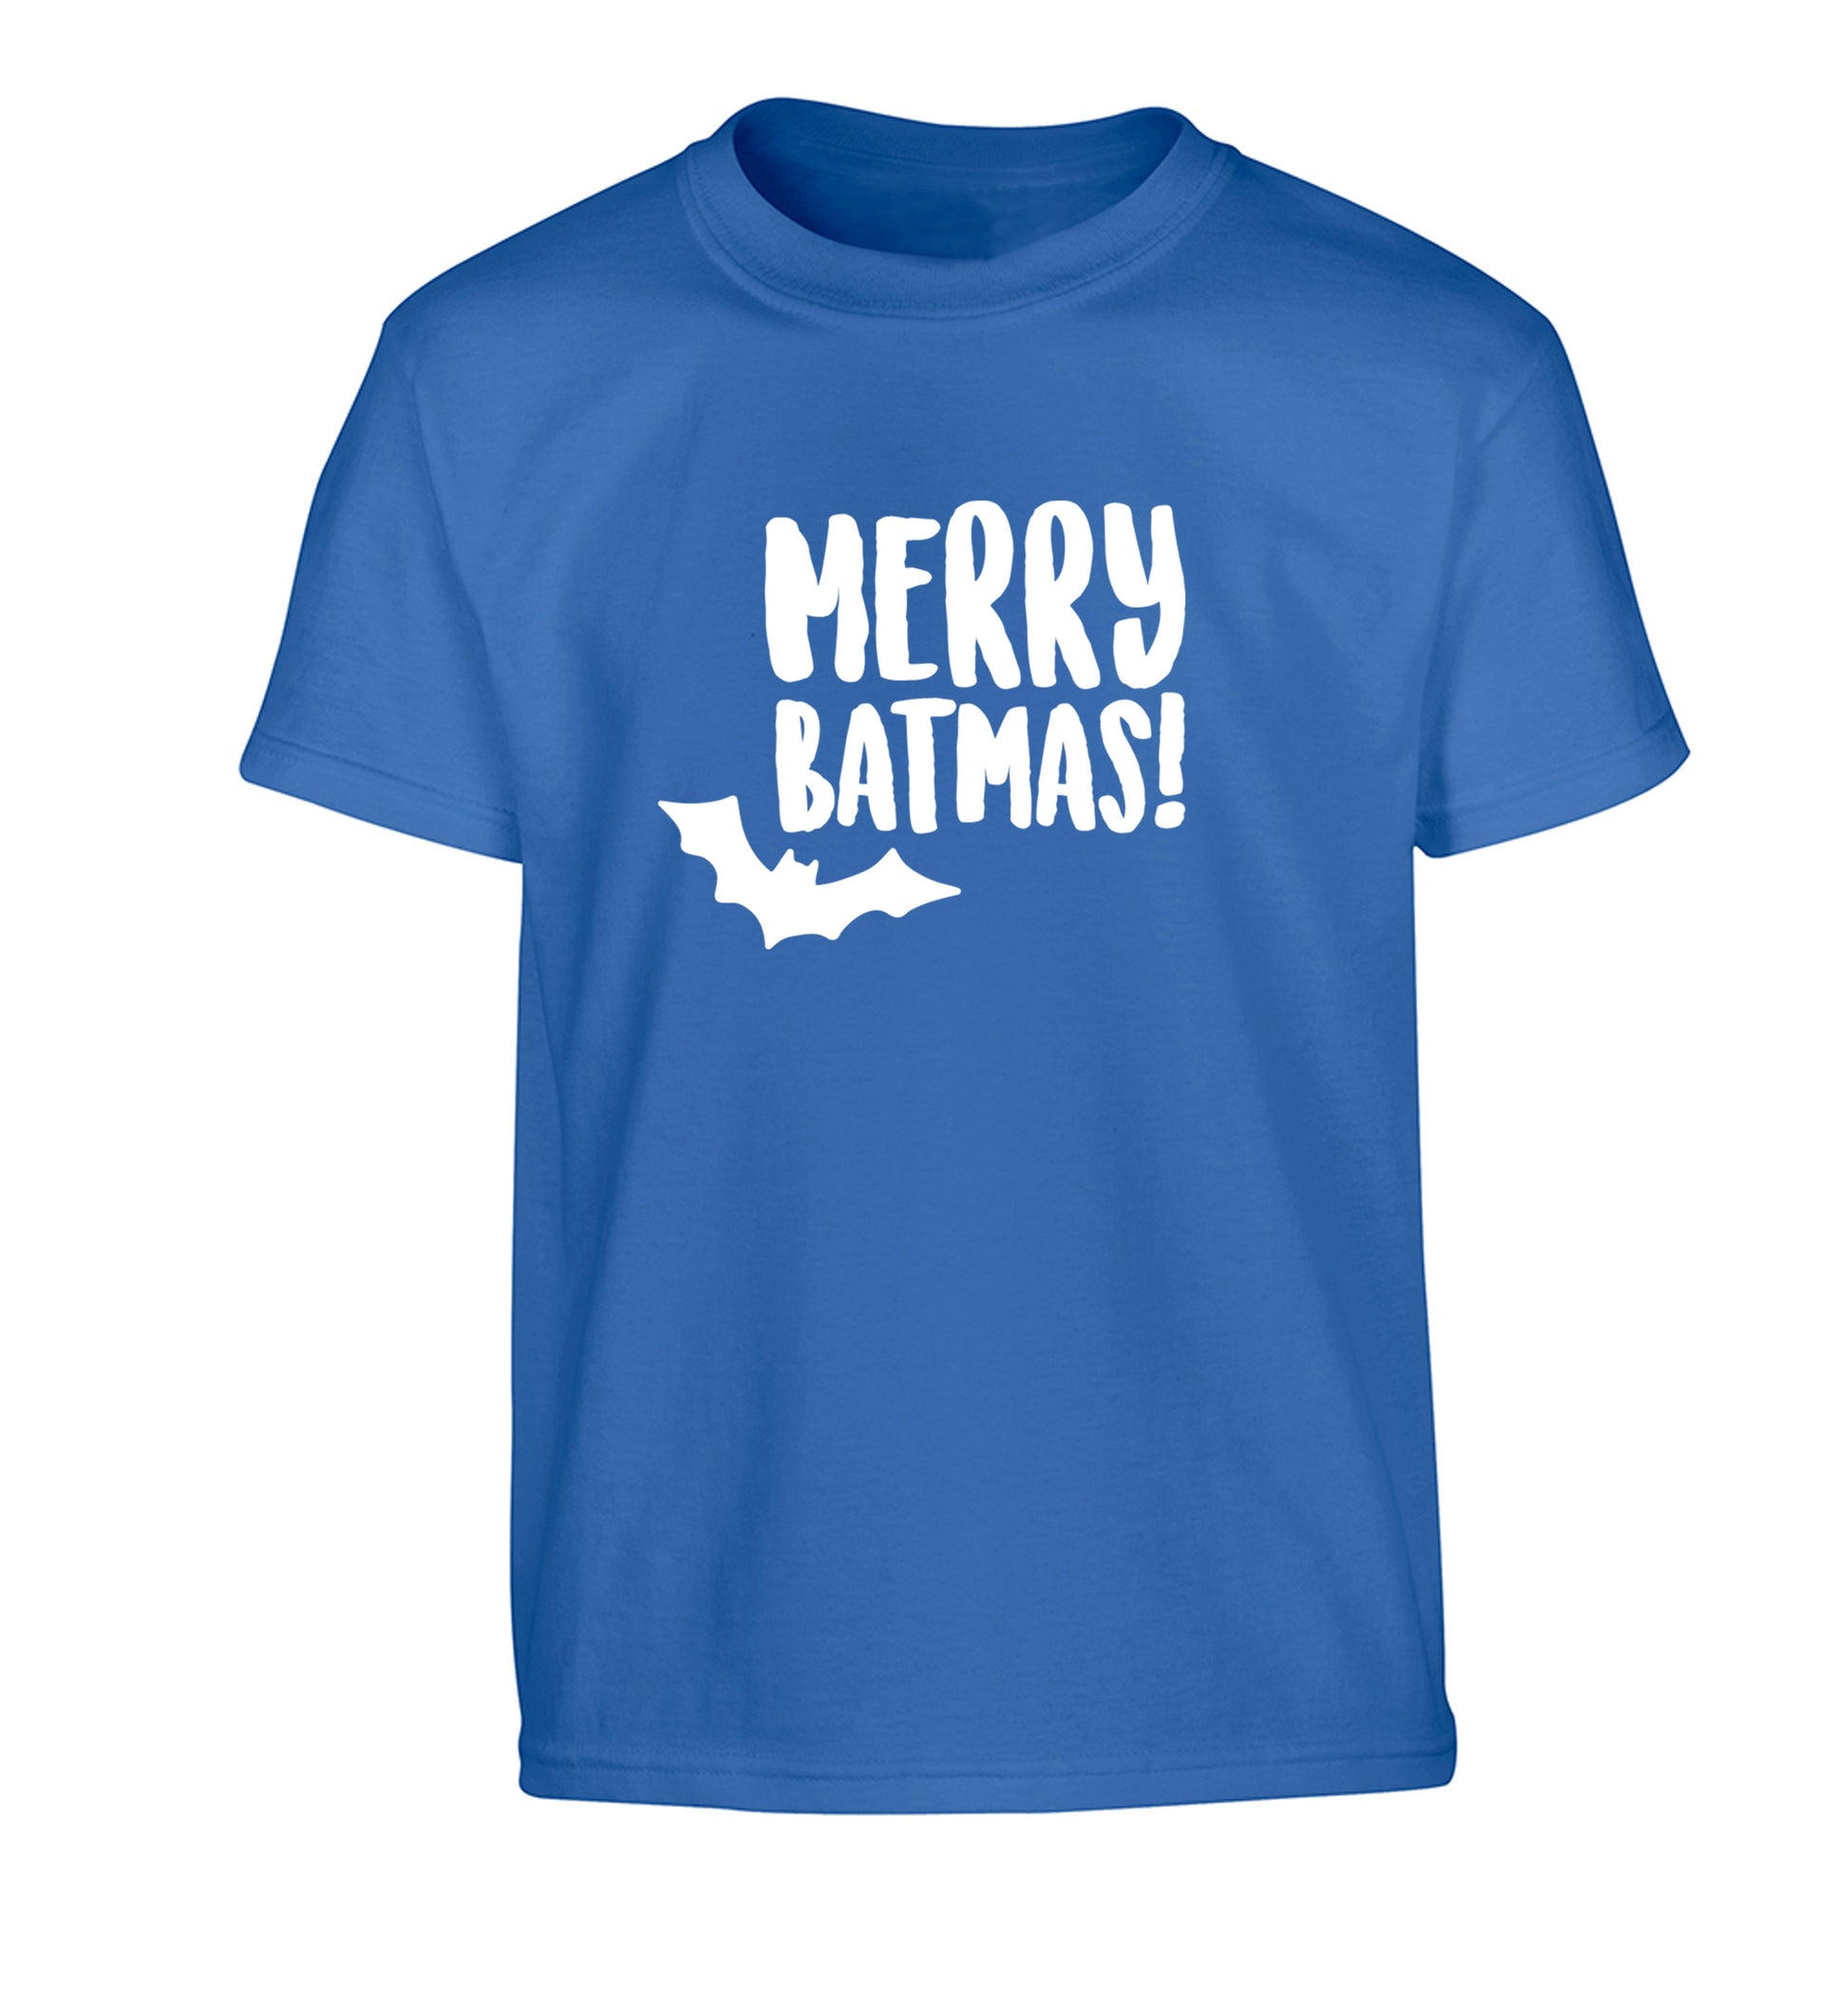 Merry Batmas Children's blue Tshirt 12-14 Years